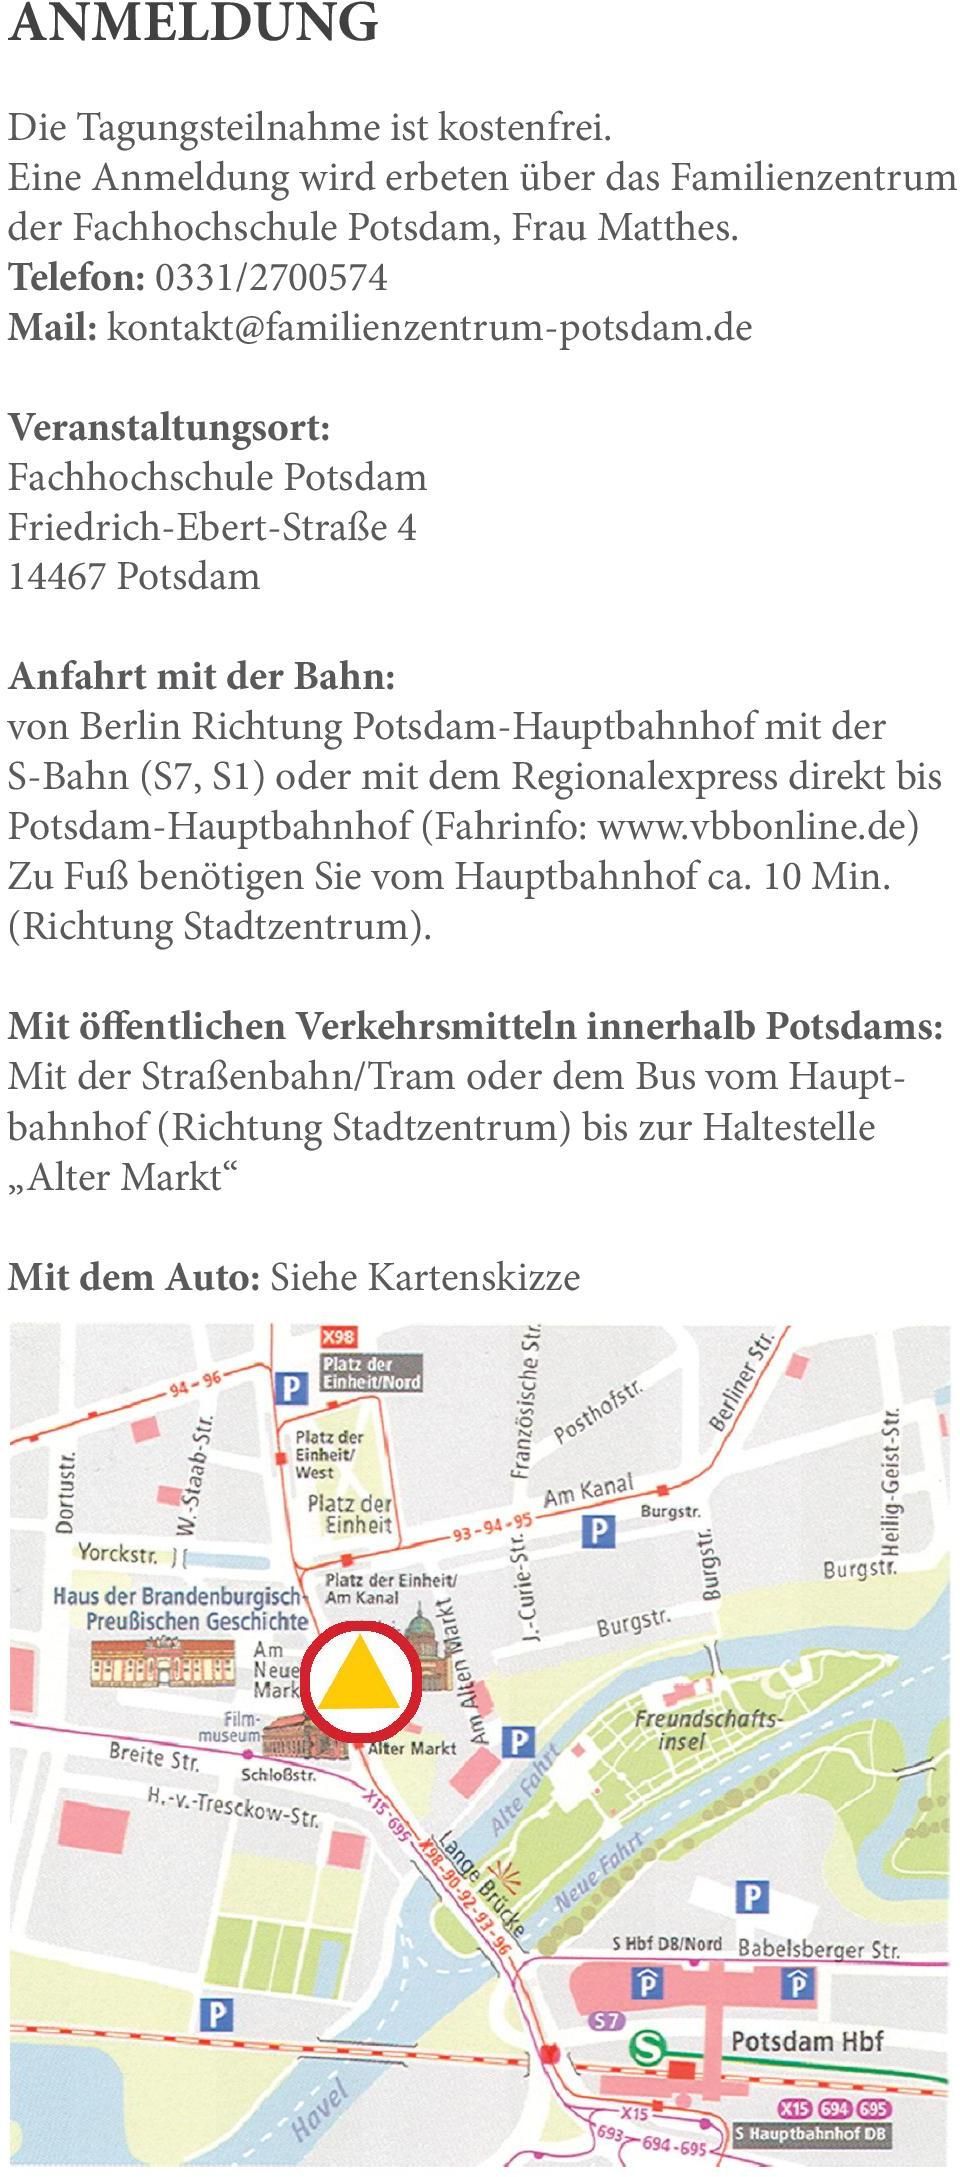 de Veranstaltungsort: Fachhochschule Potsdam Friedrich-Ebert-Straße 4 14467 Potsdam Anfahrt mit der Bahn: von Berlin Richtung Potsdam-Hauptbahnhof mit der S-Bahn (S7, S1) oder mit dem